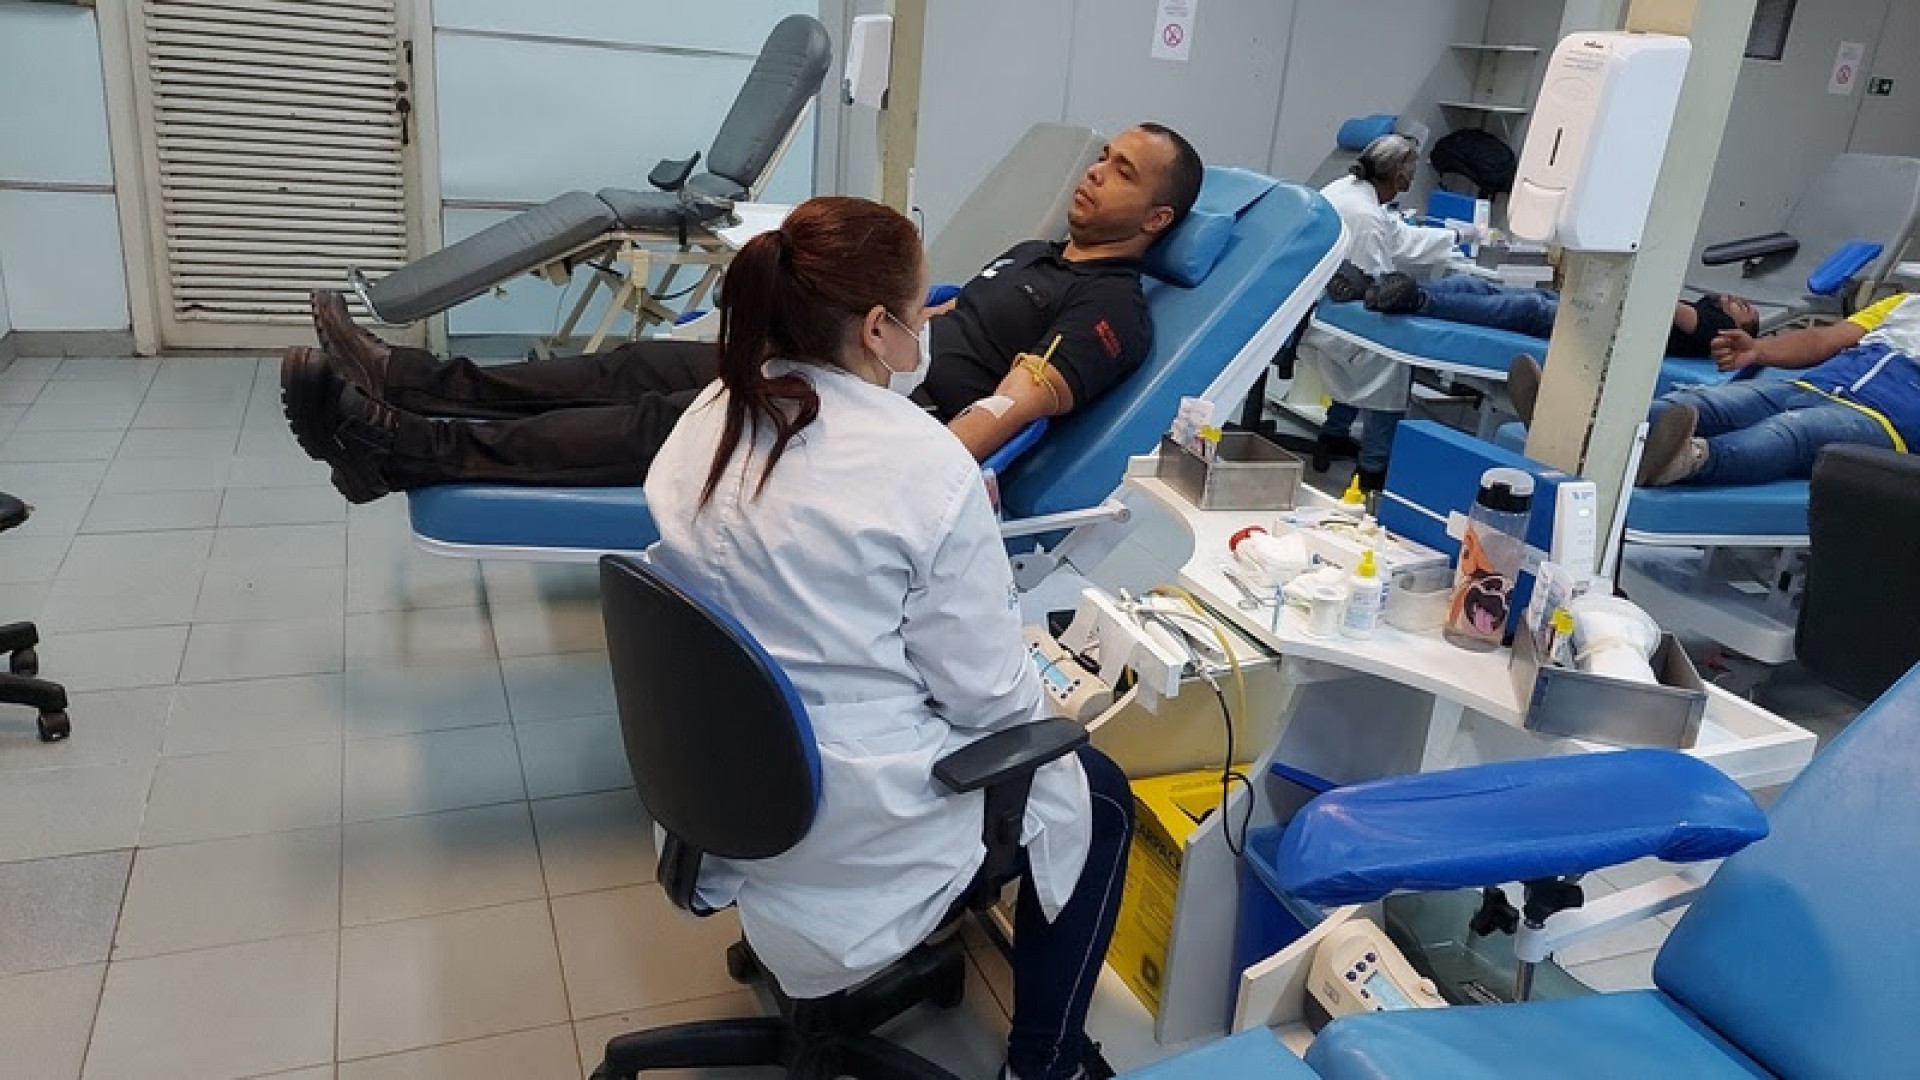 Na Semana Nacional do Doador de Sangue, o MetrôRio oferece 300 passagens para doadores de sangue   - Divulgação